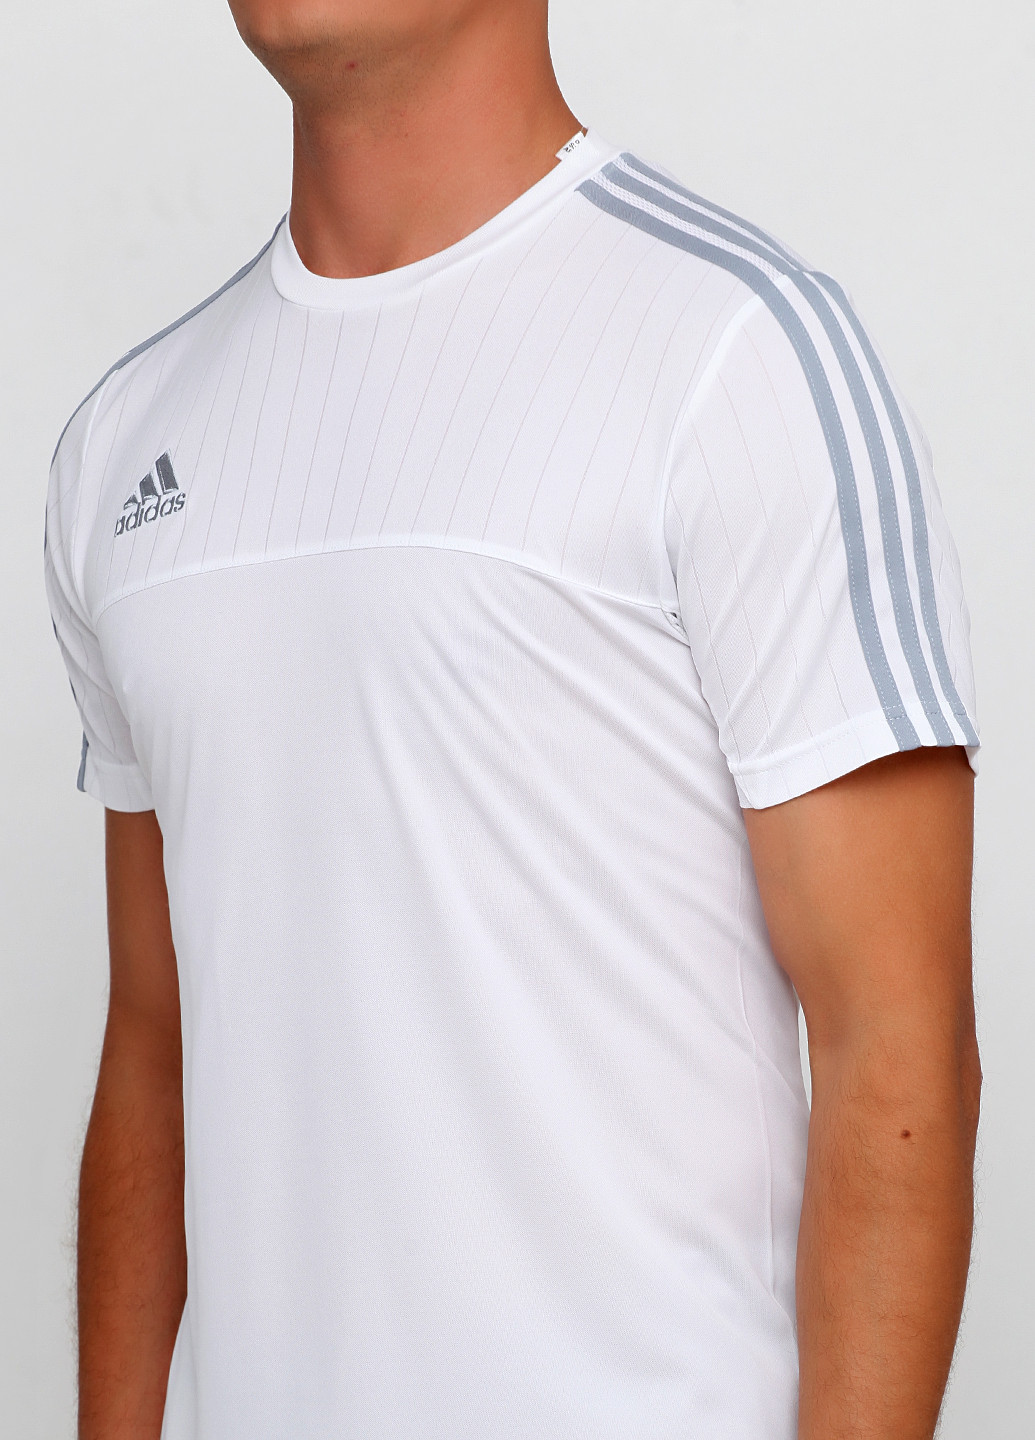 Белая футболка adidas Tiro 15 Training Jersey